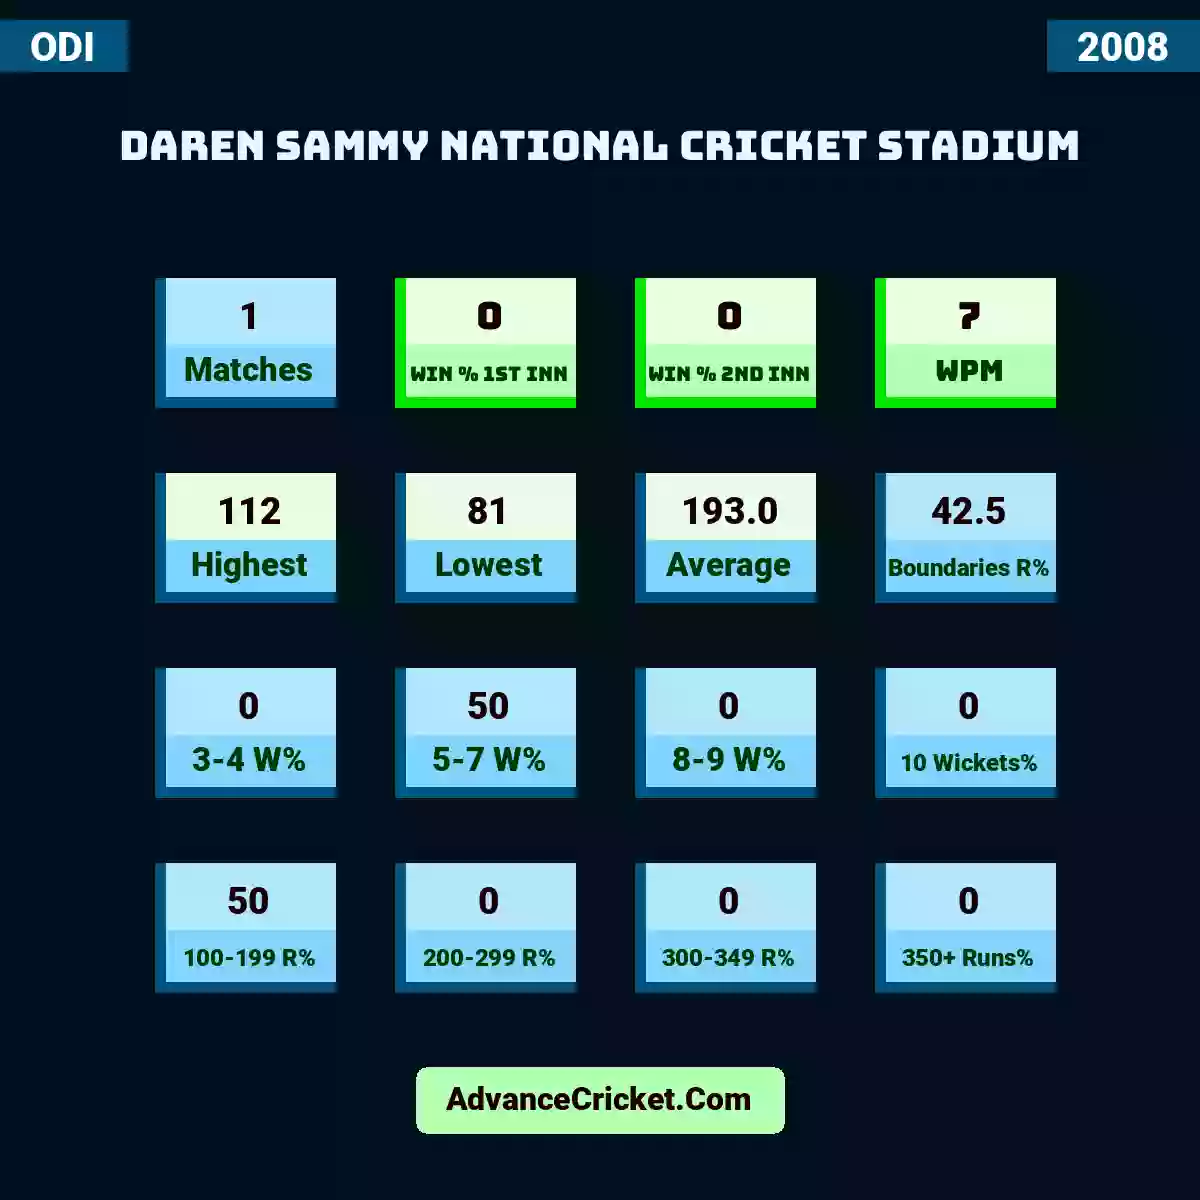 Image showing Daren Sammy National Cricket Stadium with Matches: 1, Win % 1st Inn: 0, Win % 2nd Inn: 0, WPM: 7, Highest: 112, Lowest: 81, Average: 193.0, Boundaries R%: 42.5, 3-4 W%: 0, 5-7 W%: 50, 8-9 W%: 0, 10 Wickets%: 0, 100-199 R%: 50, 200-299 R%: 0, 300-349 R%: 0, 350+ Runs%: 0.